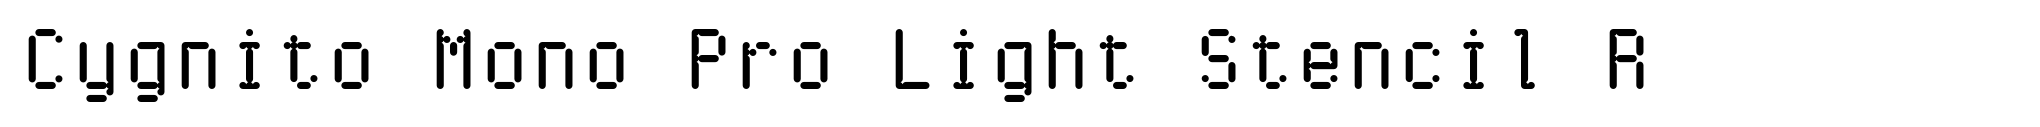 Cygnito Mono Pro Light Stencil R image